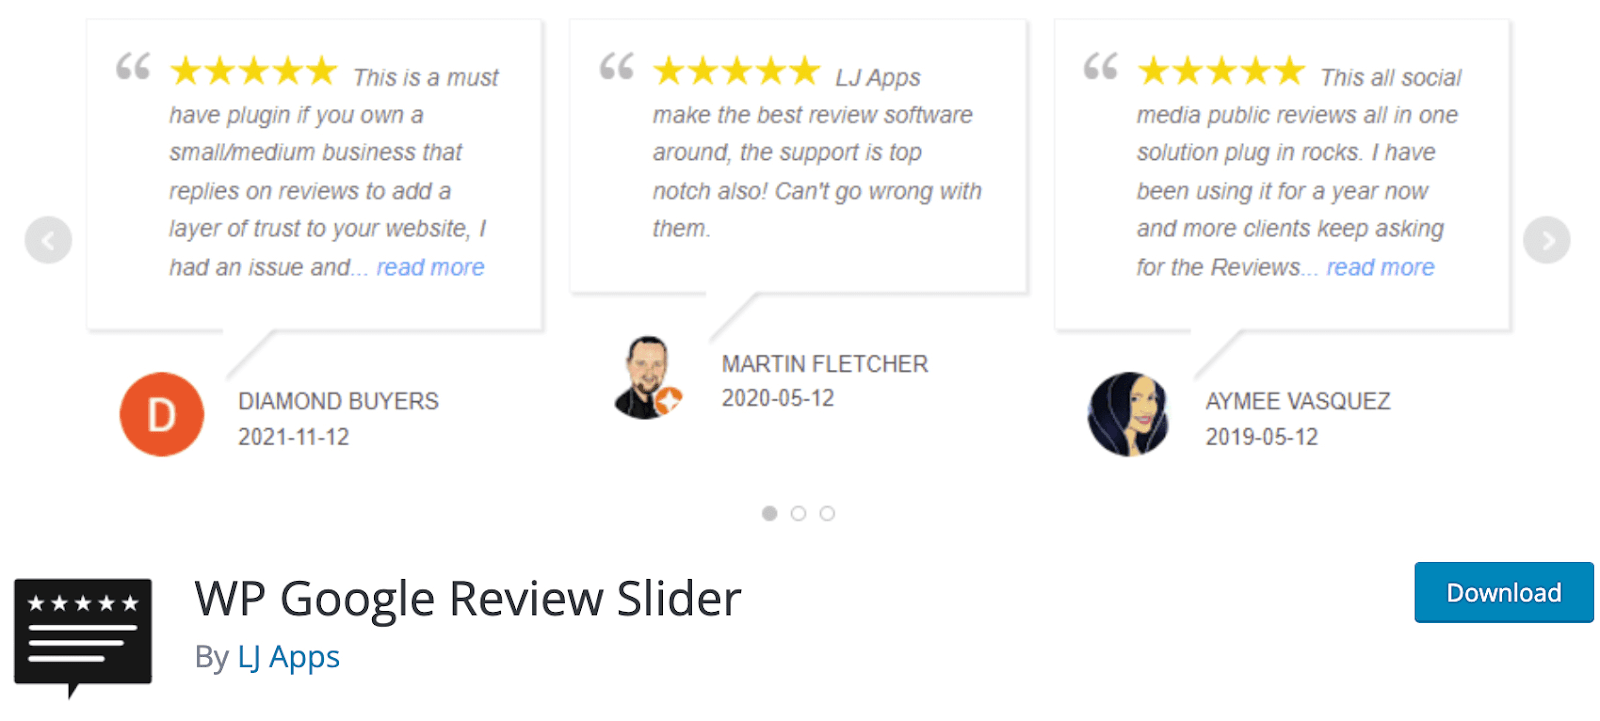 WP Google Review Slider